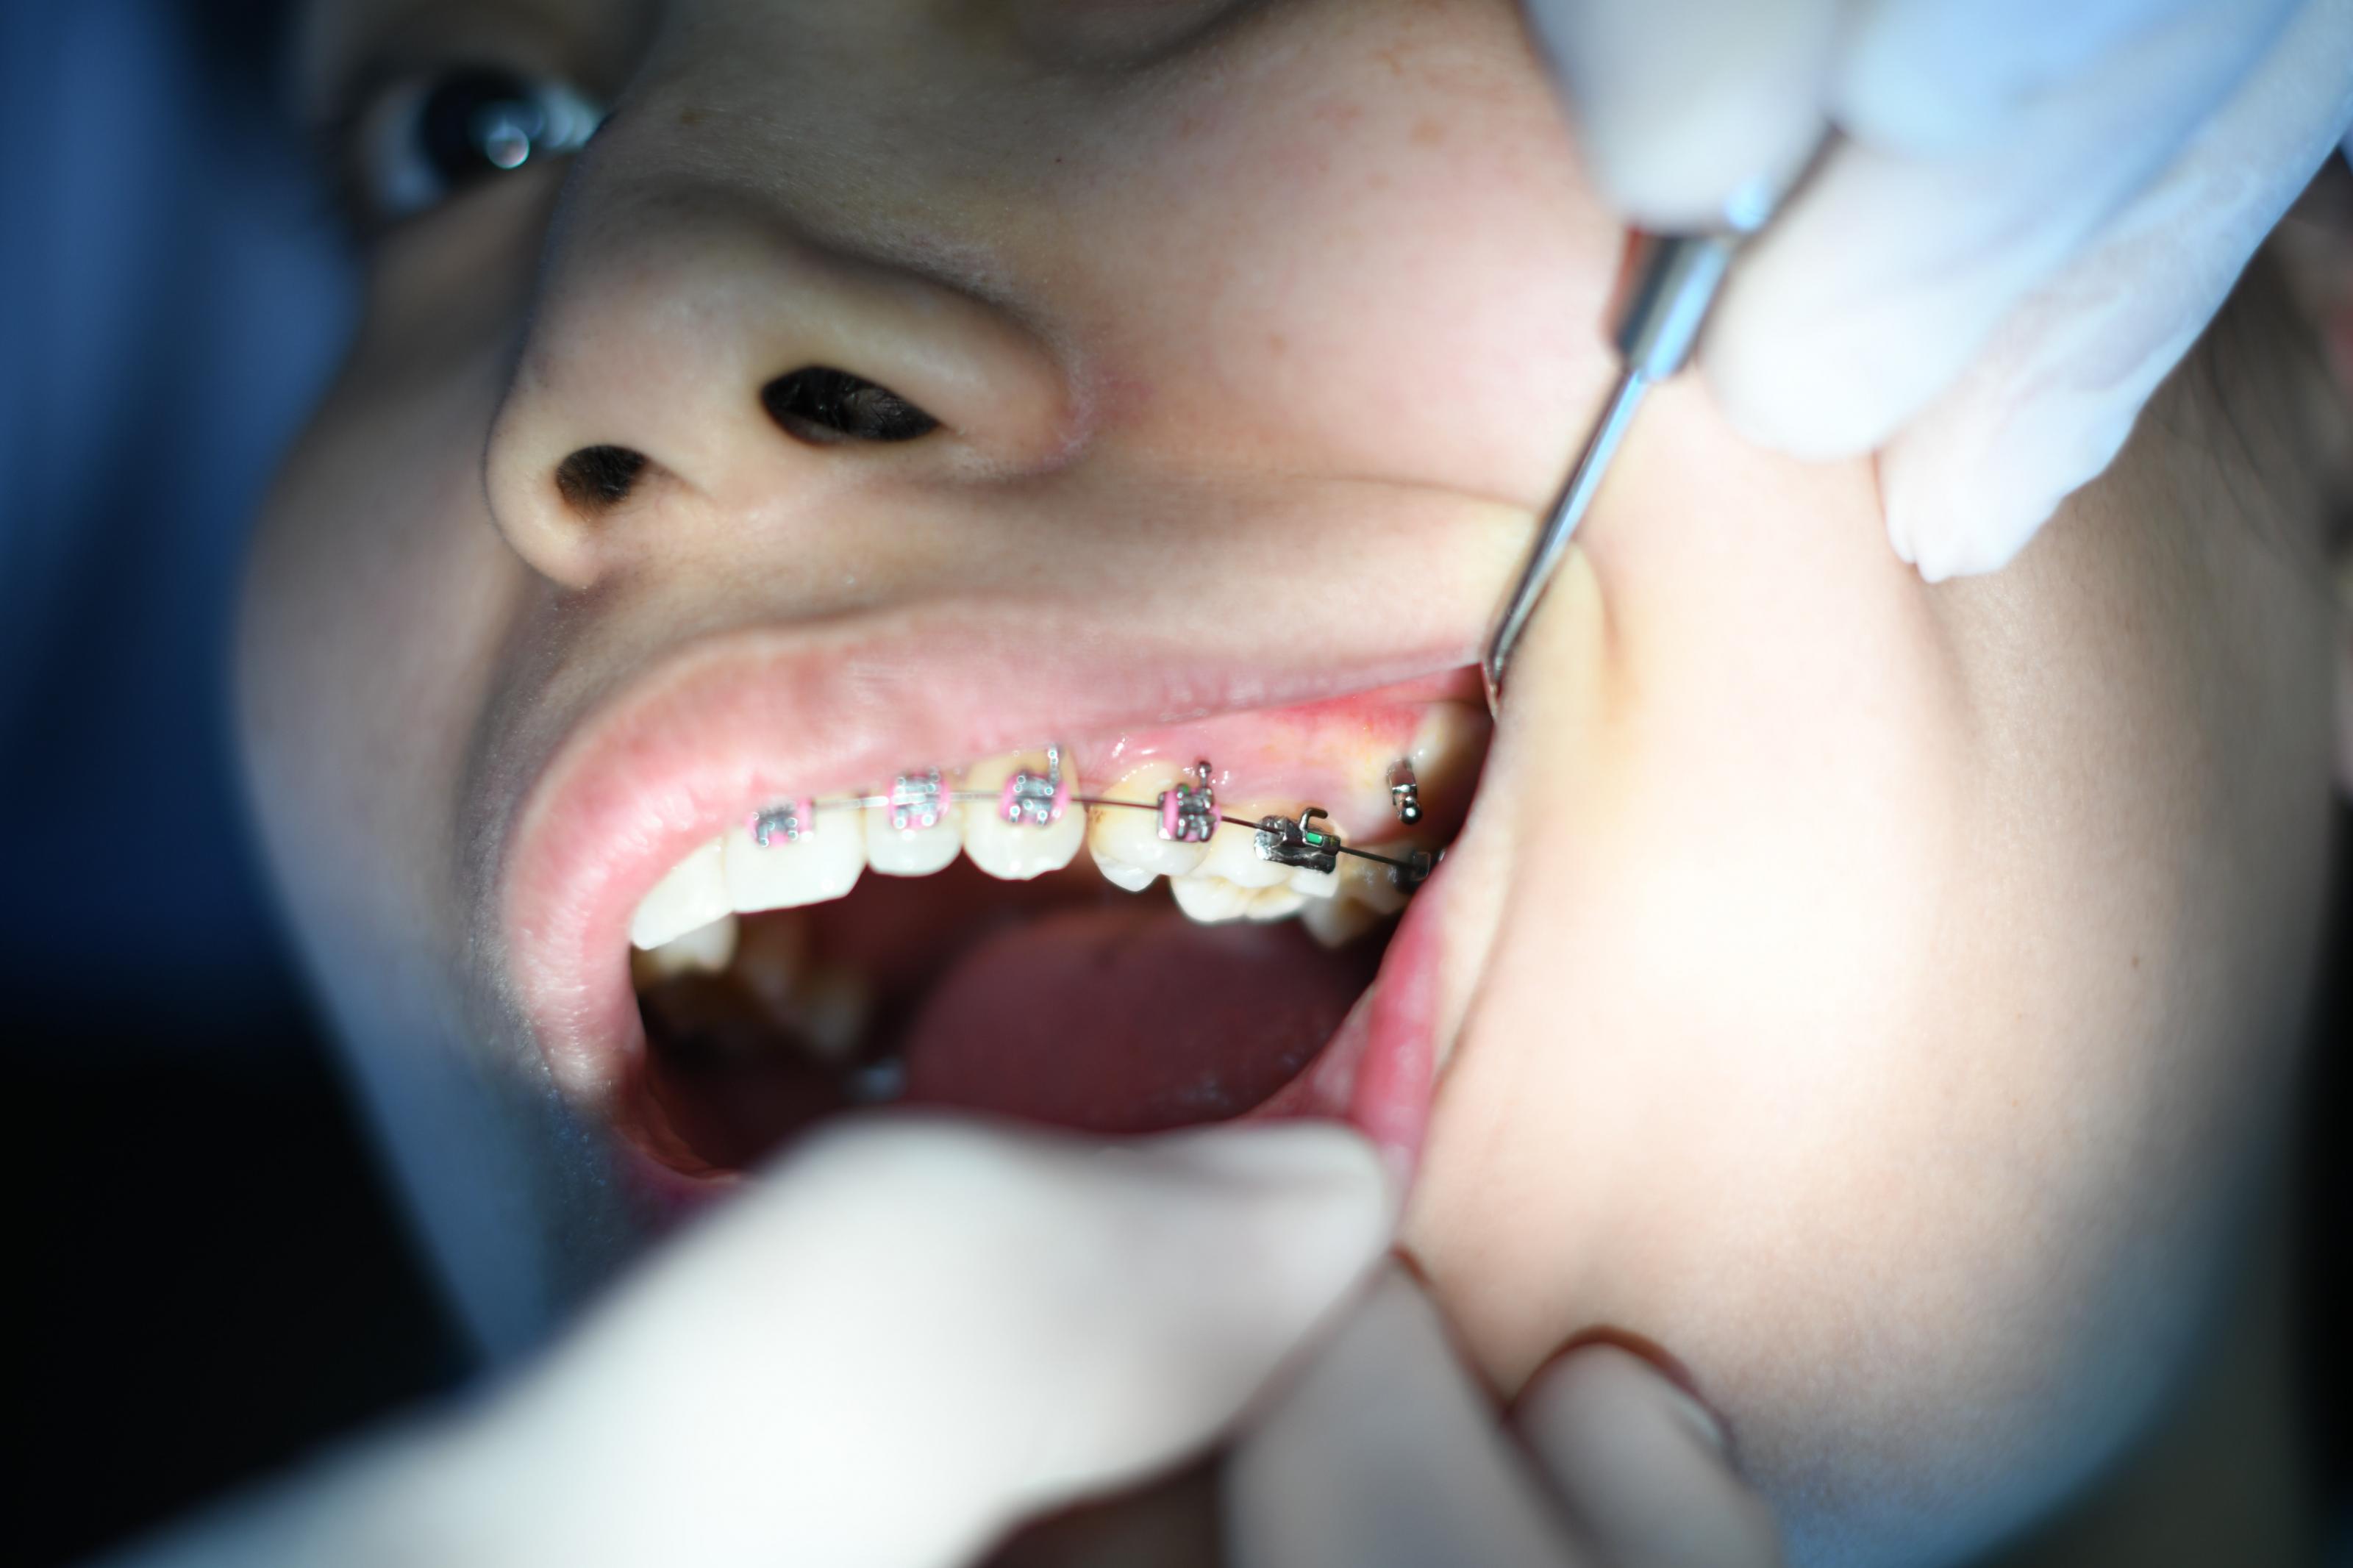 Kids Dentist Queen Creek, AZ. What Braces Can Dentists Fit?